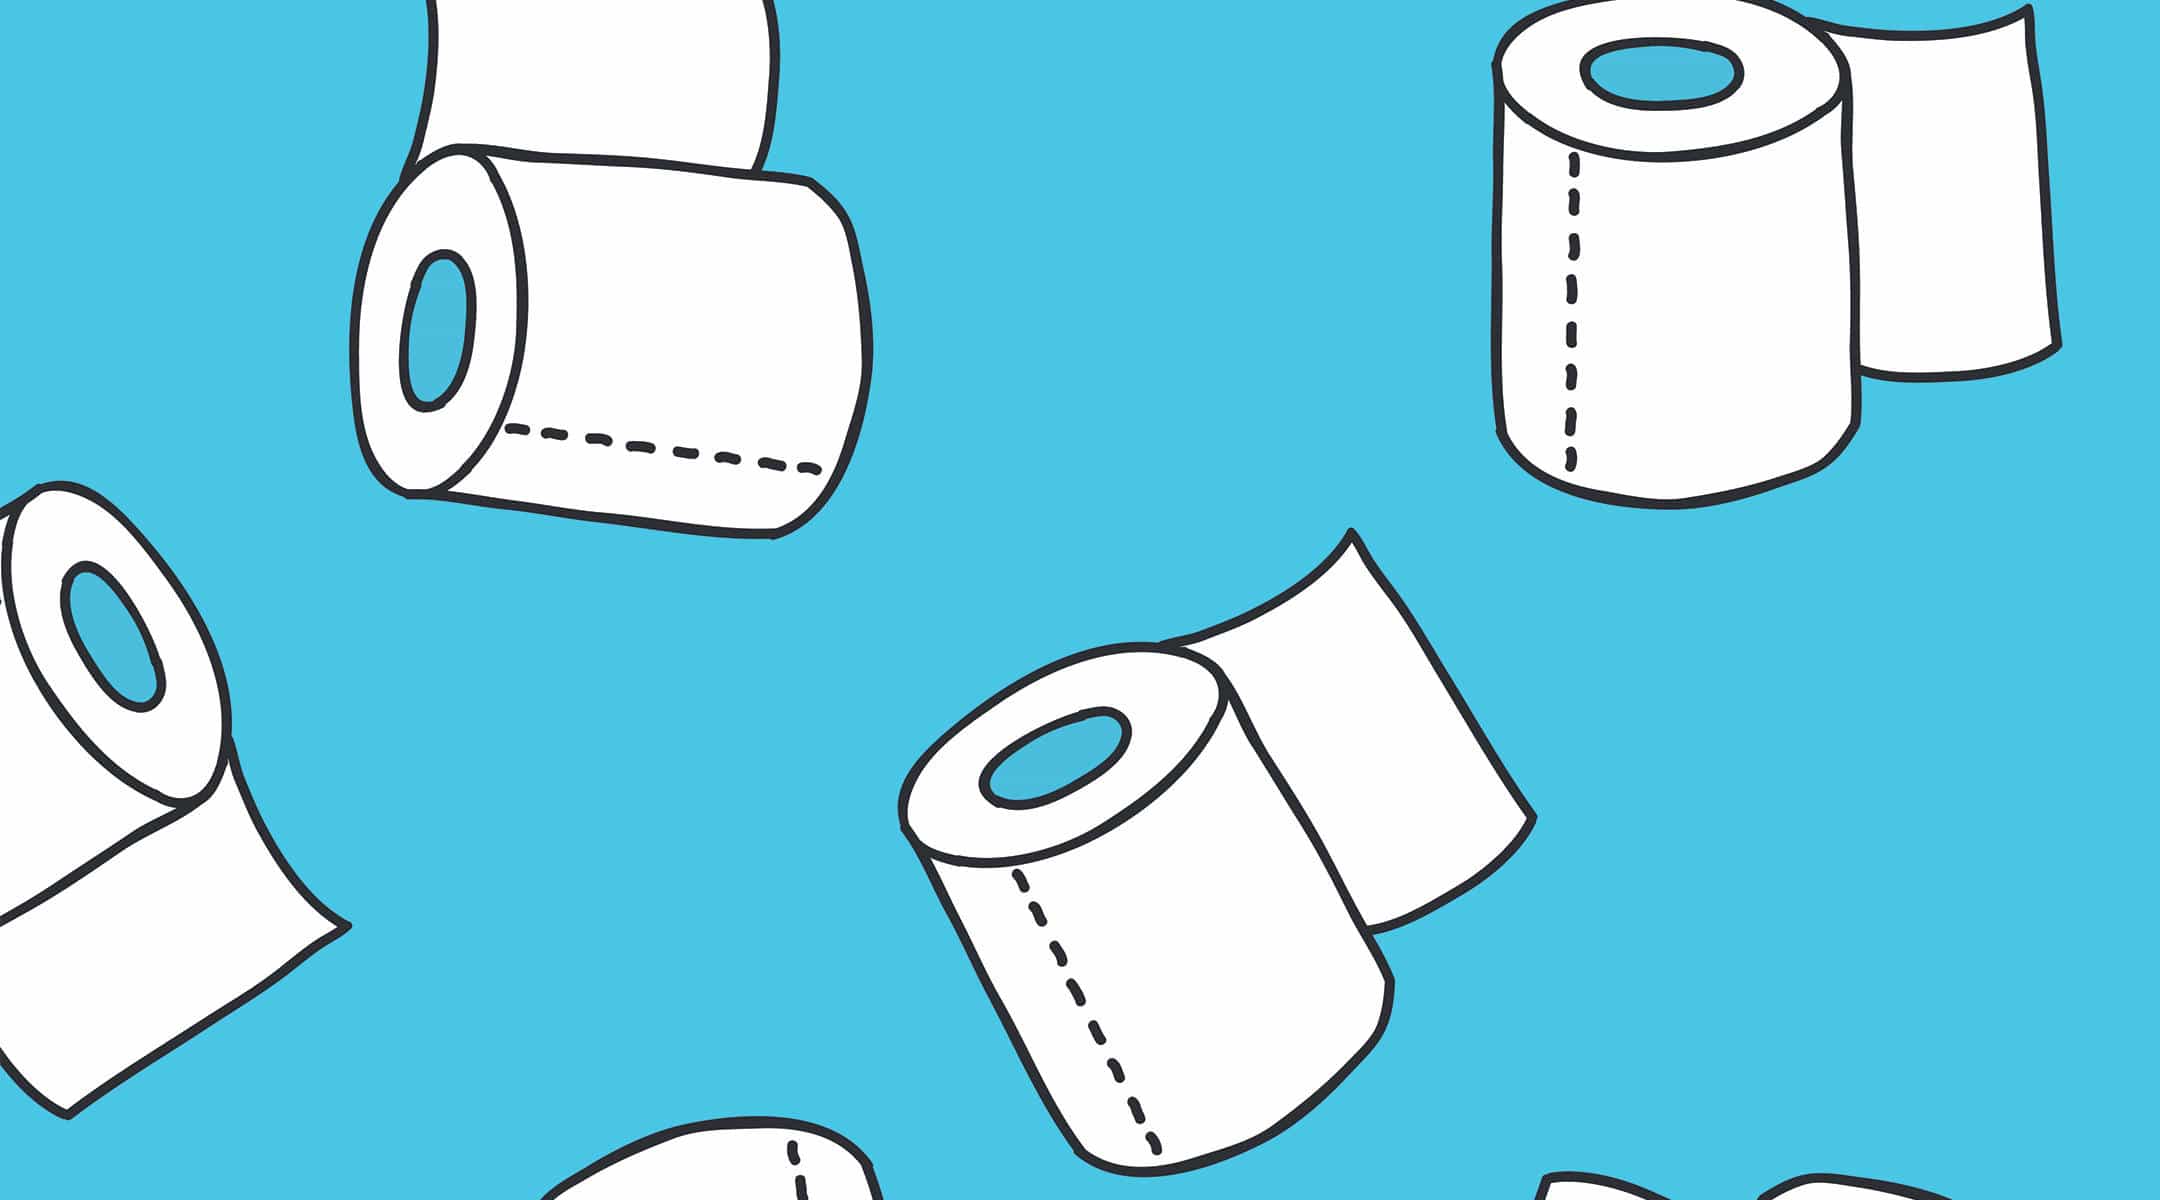 Diarrhea---toilet-paper